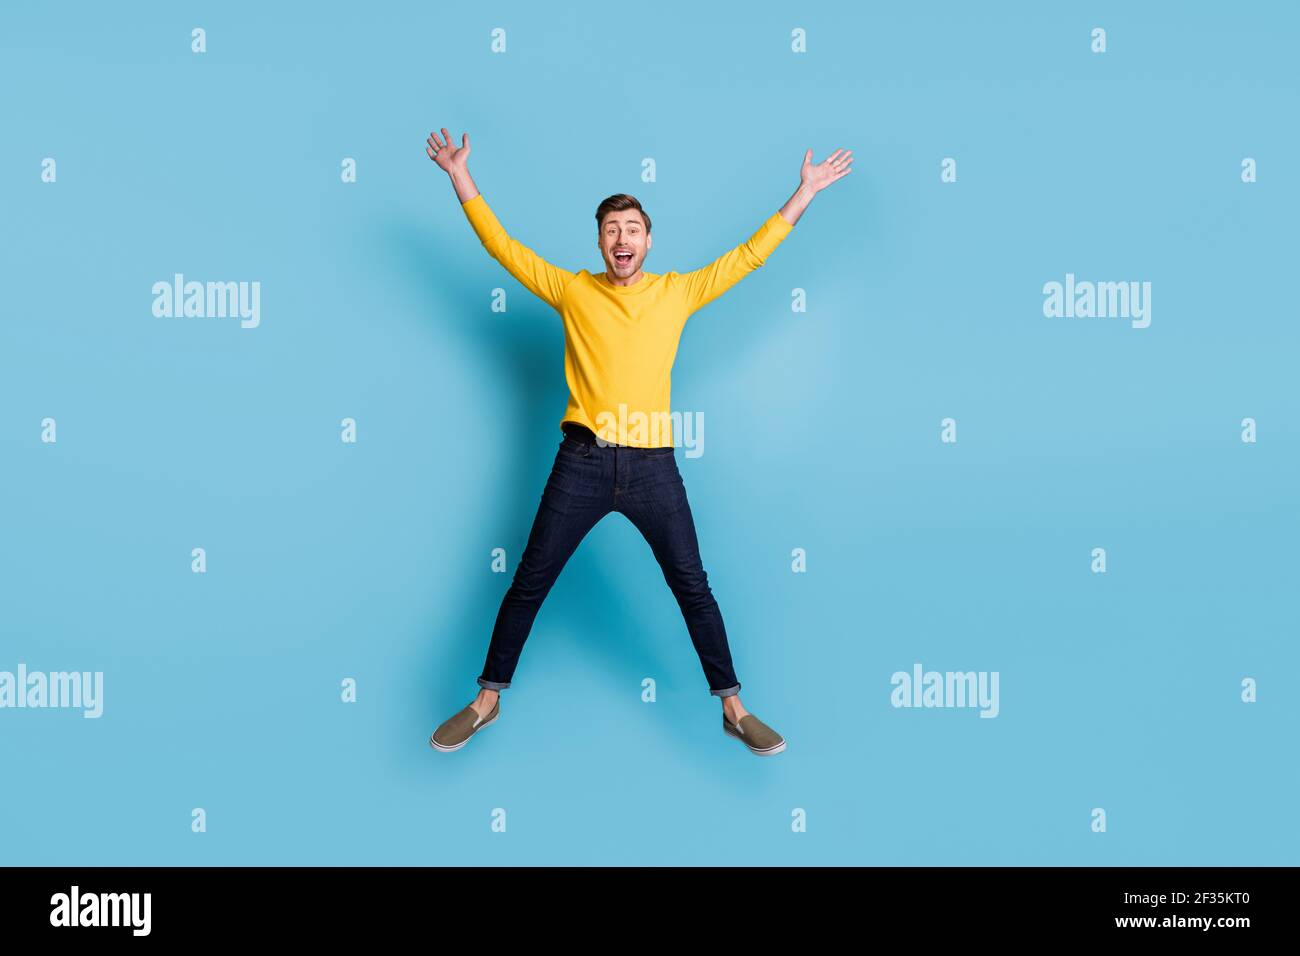 Ritratto di dimensioni complete di un ragazzo sbalordito che salta alto fare la stella figura isolata su sfondo blu Foto Stock